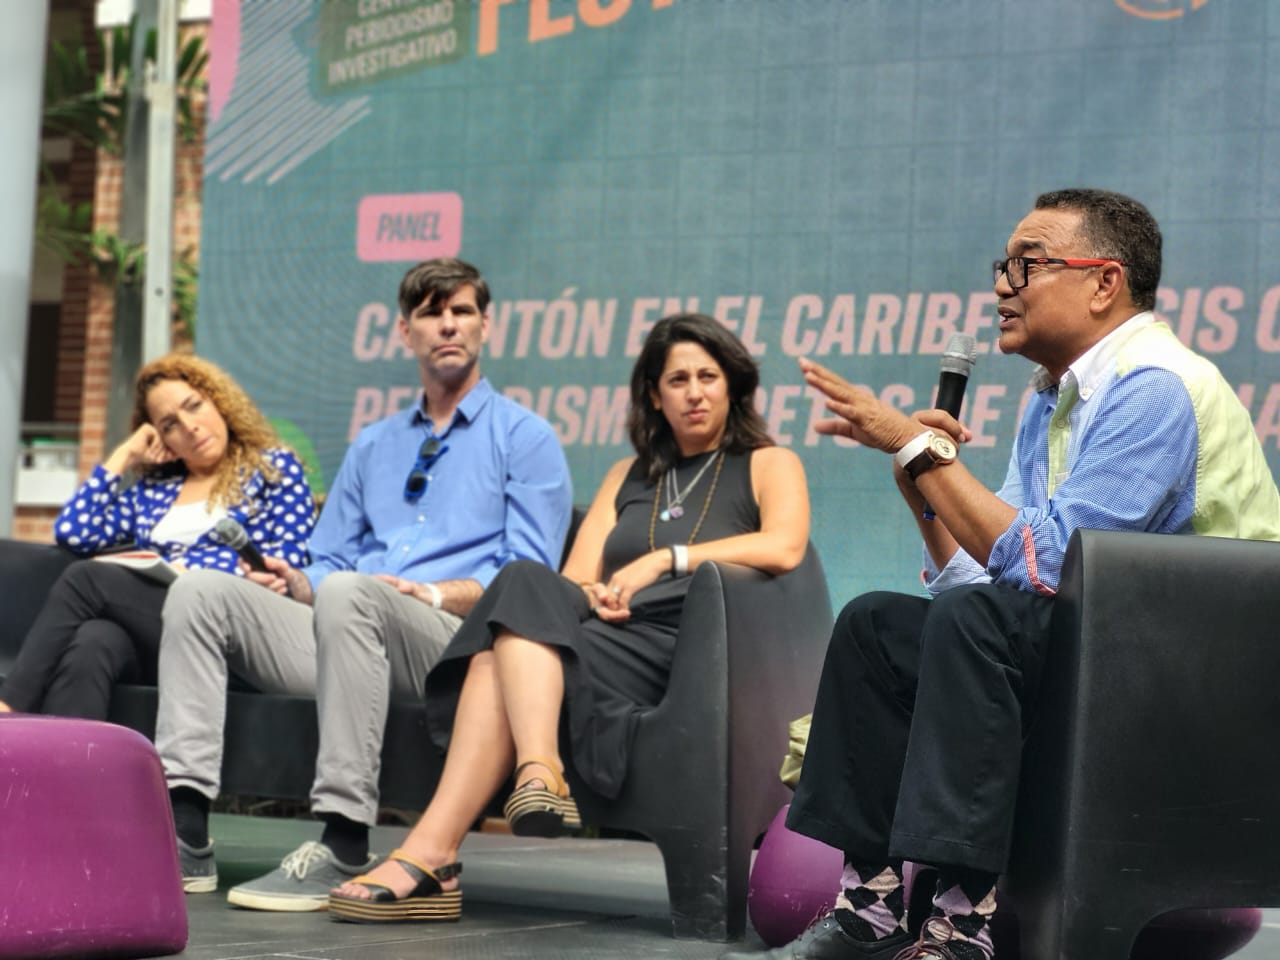     Caribe Fest : des centaines de journalistes réunis à Porto-Rico sur l’impact du changement climatique

